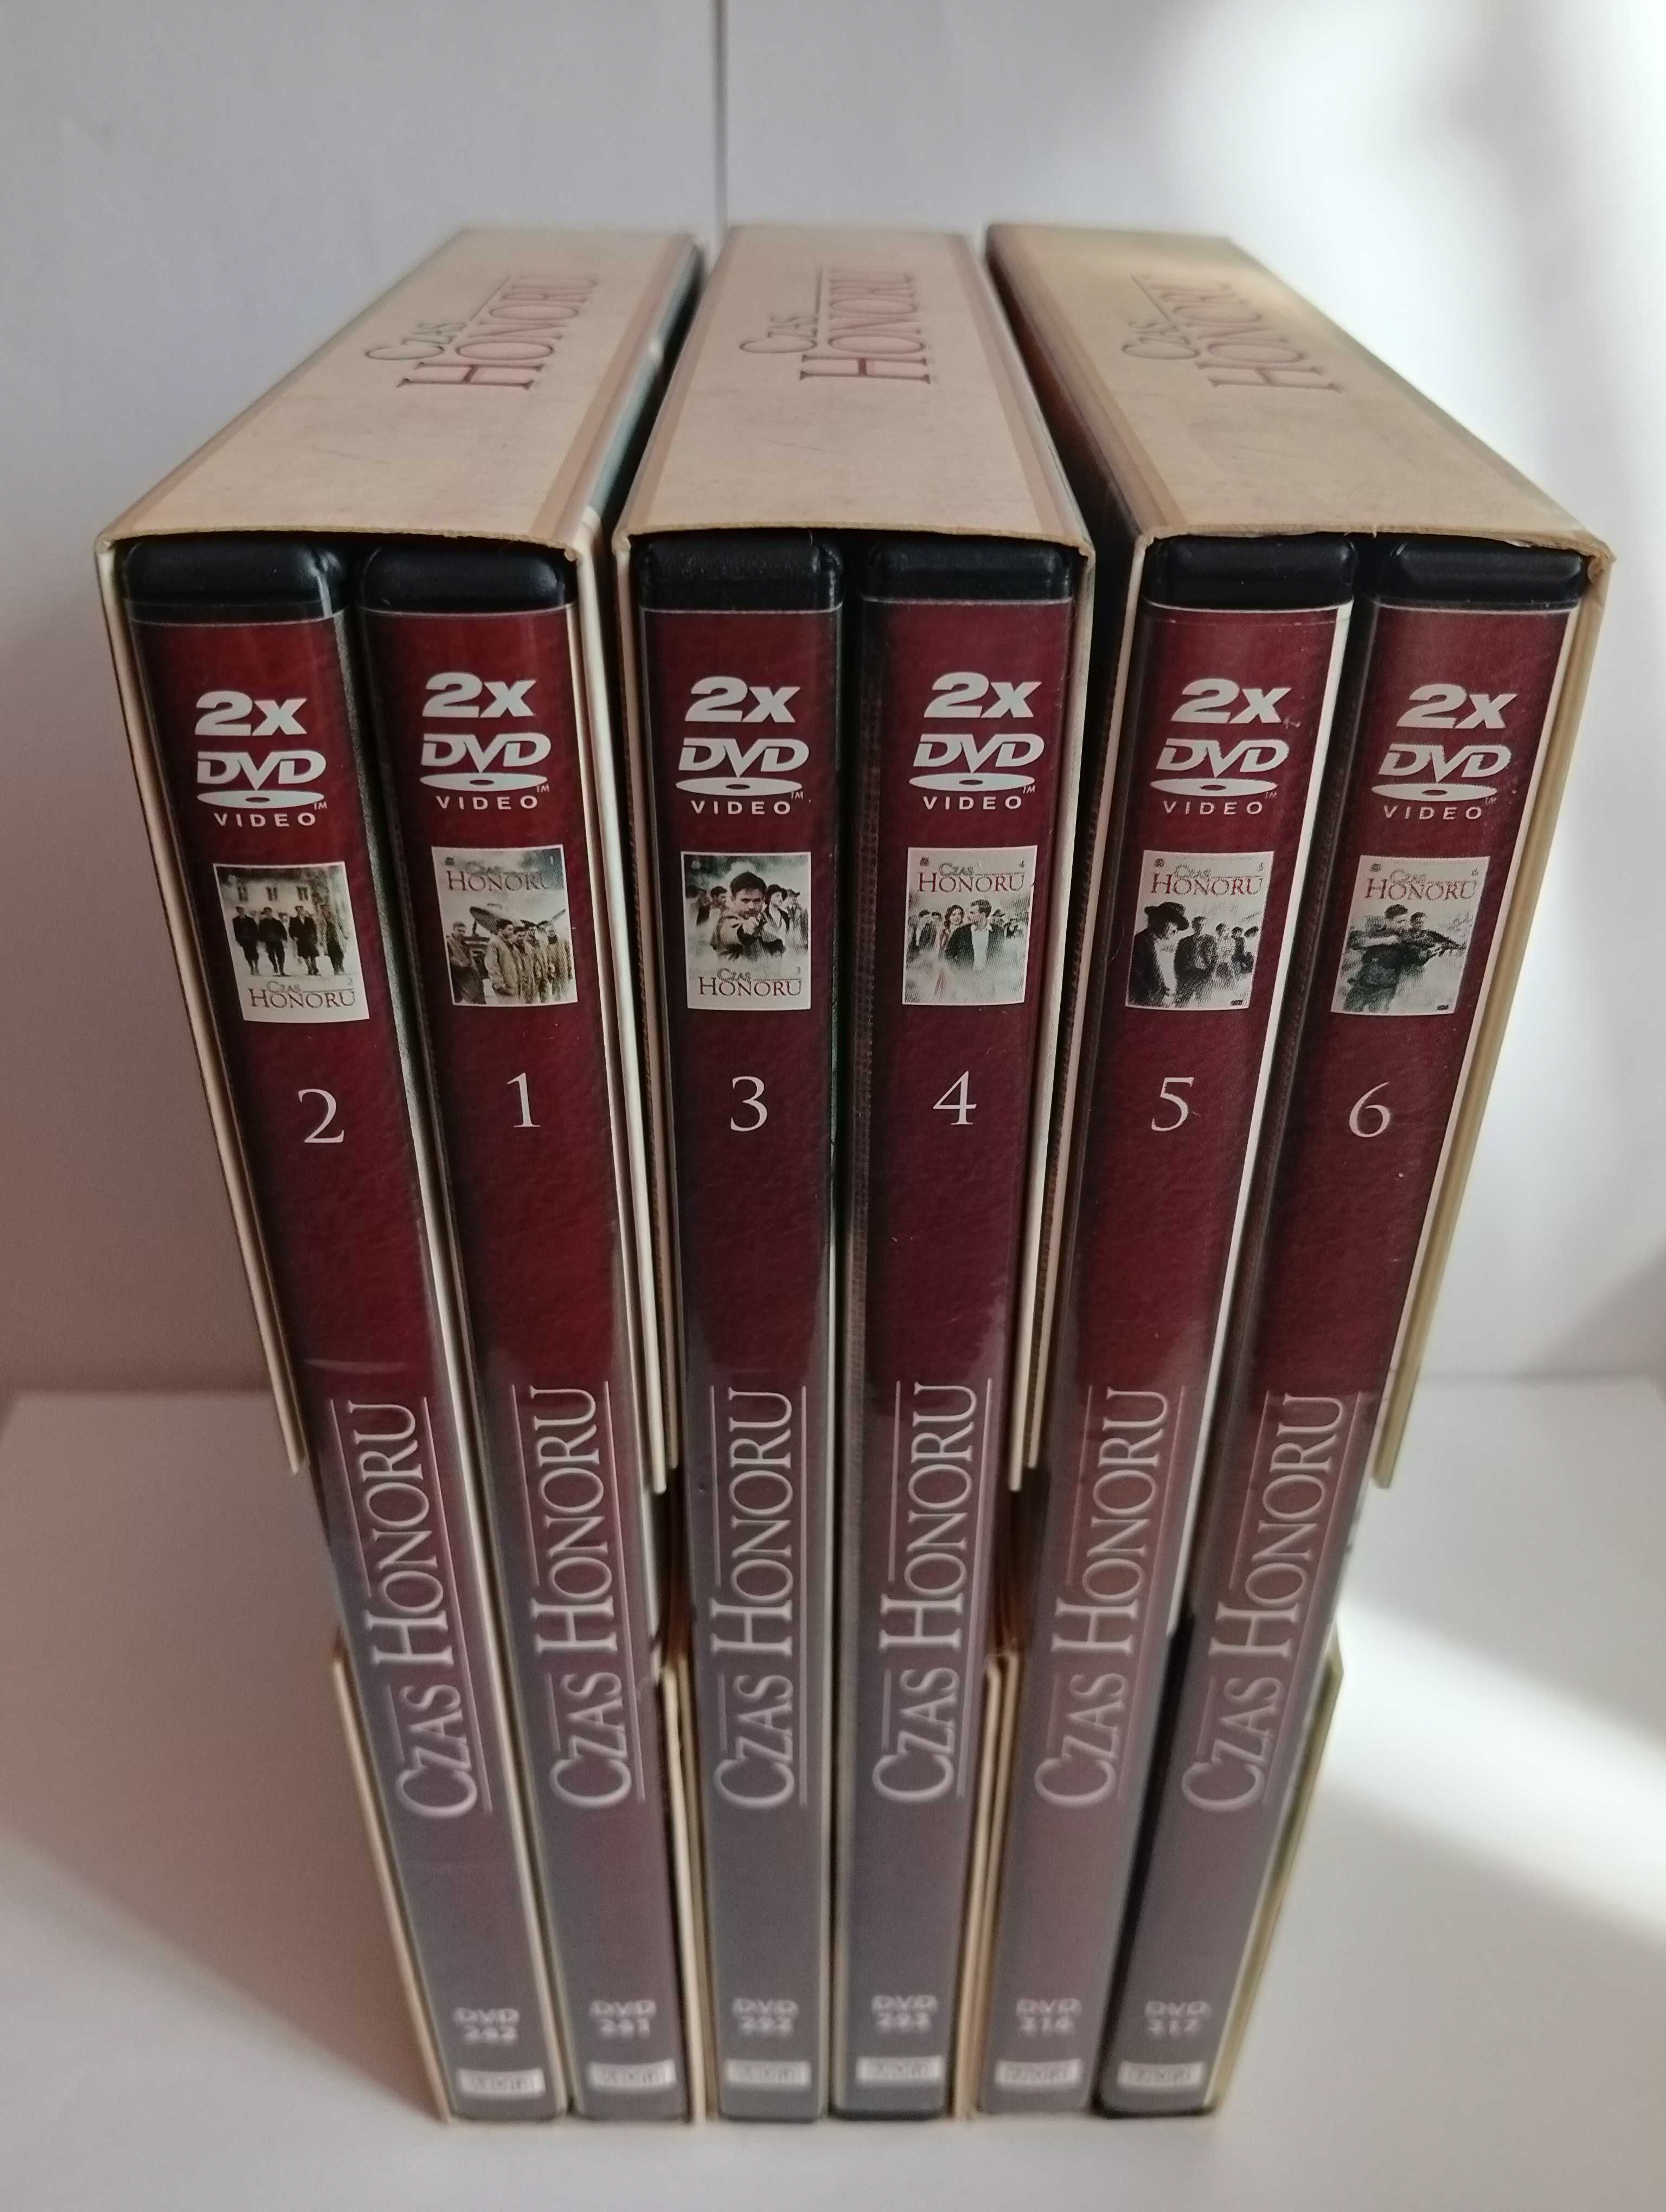 FILMY Czas honoru sezon 1/2/3  DVD [3 BOX] [12 DVD]